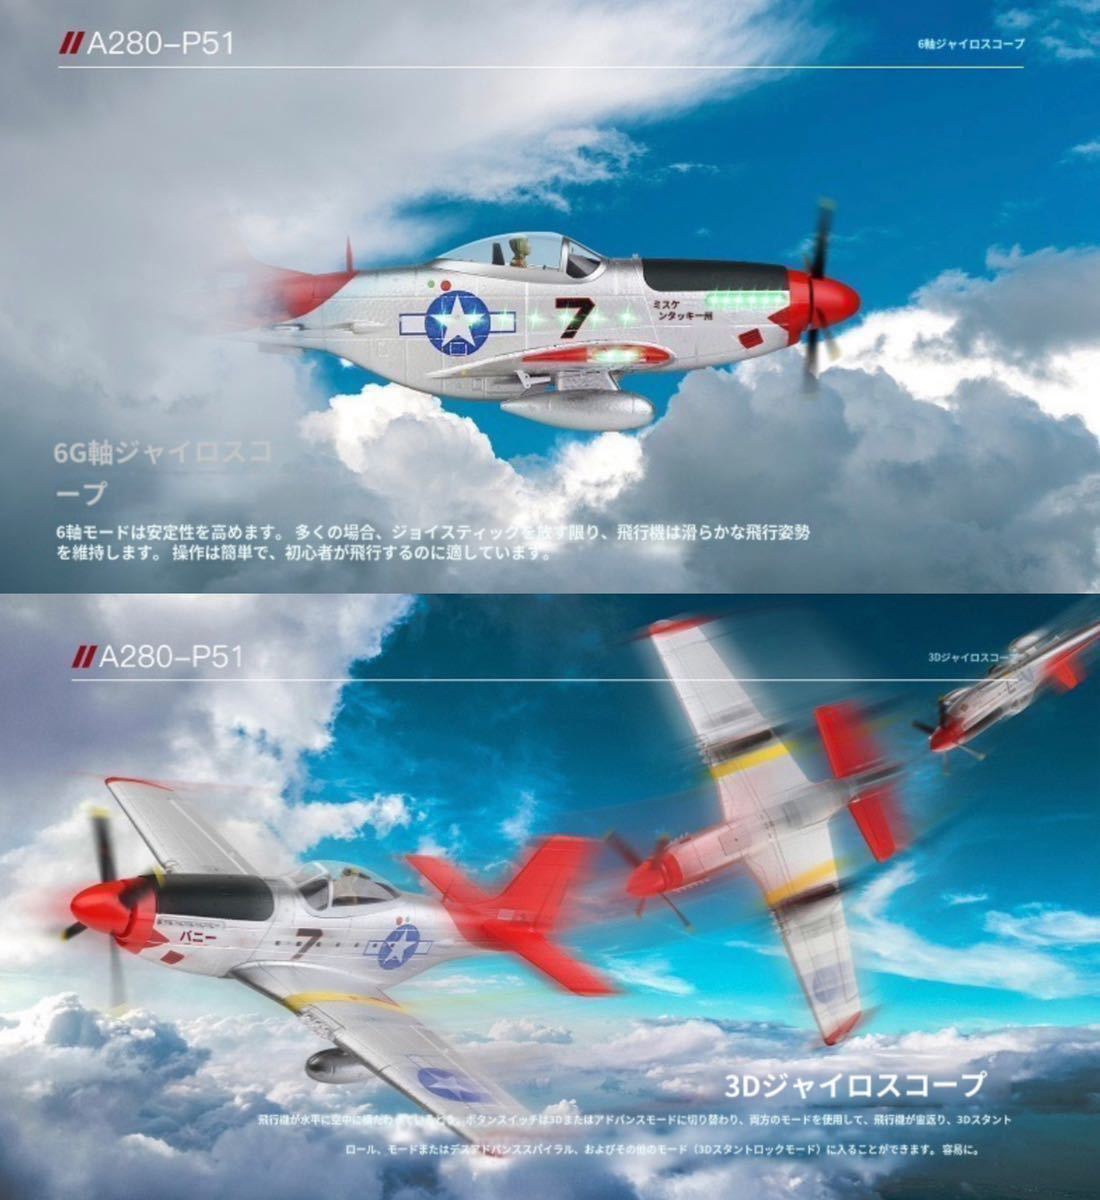 モード1送信機付き 即飛行 XK A280 P-51 マスタング ブラシレスモーター 戦闘機 560mm P51D 4CH 飛行機 3D/6G切替 LED RCラジコン RTF EPP_画像2